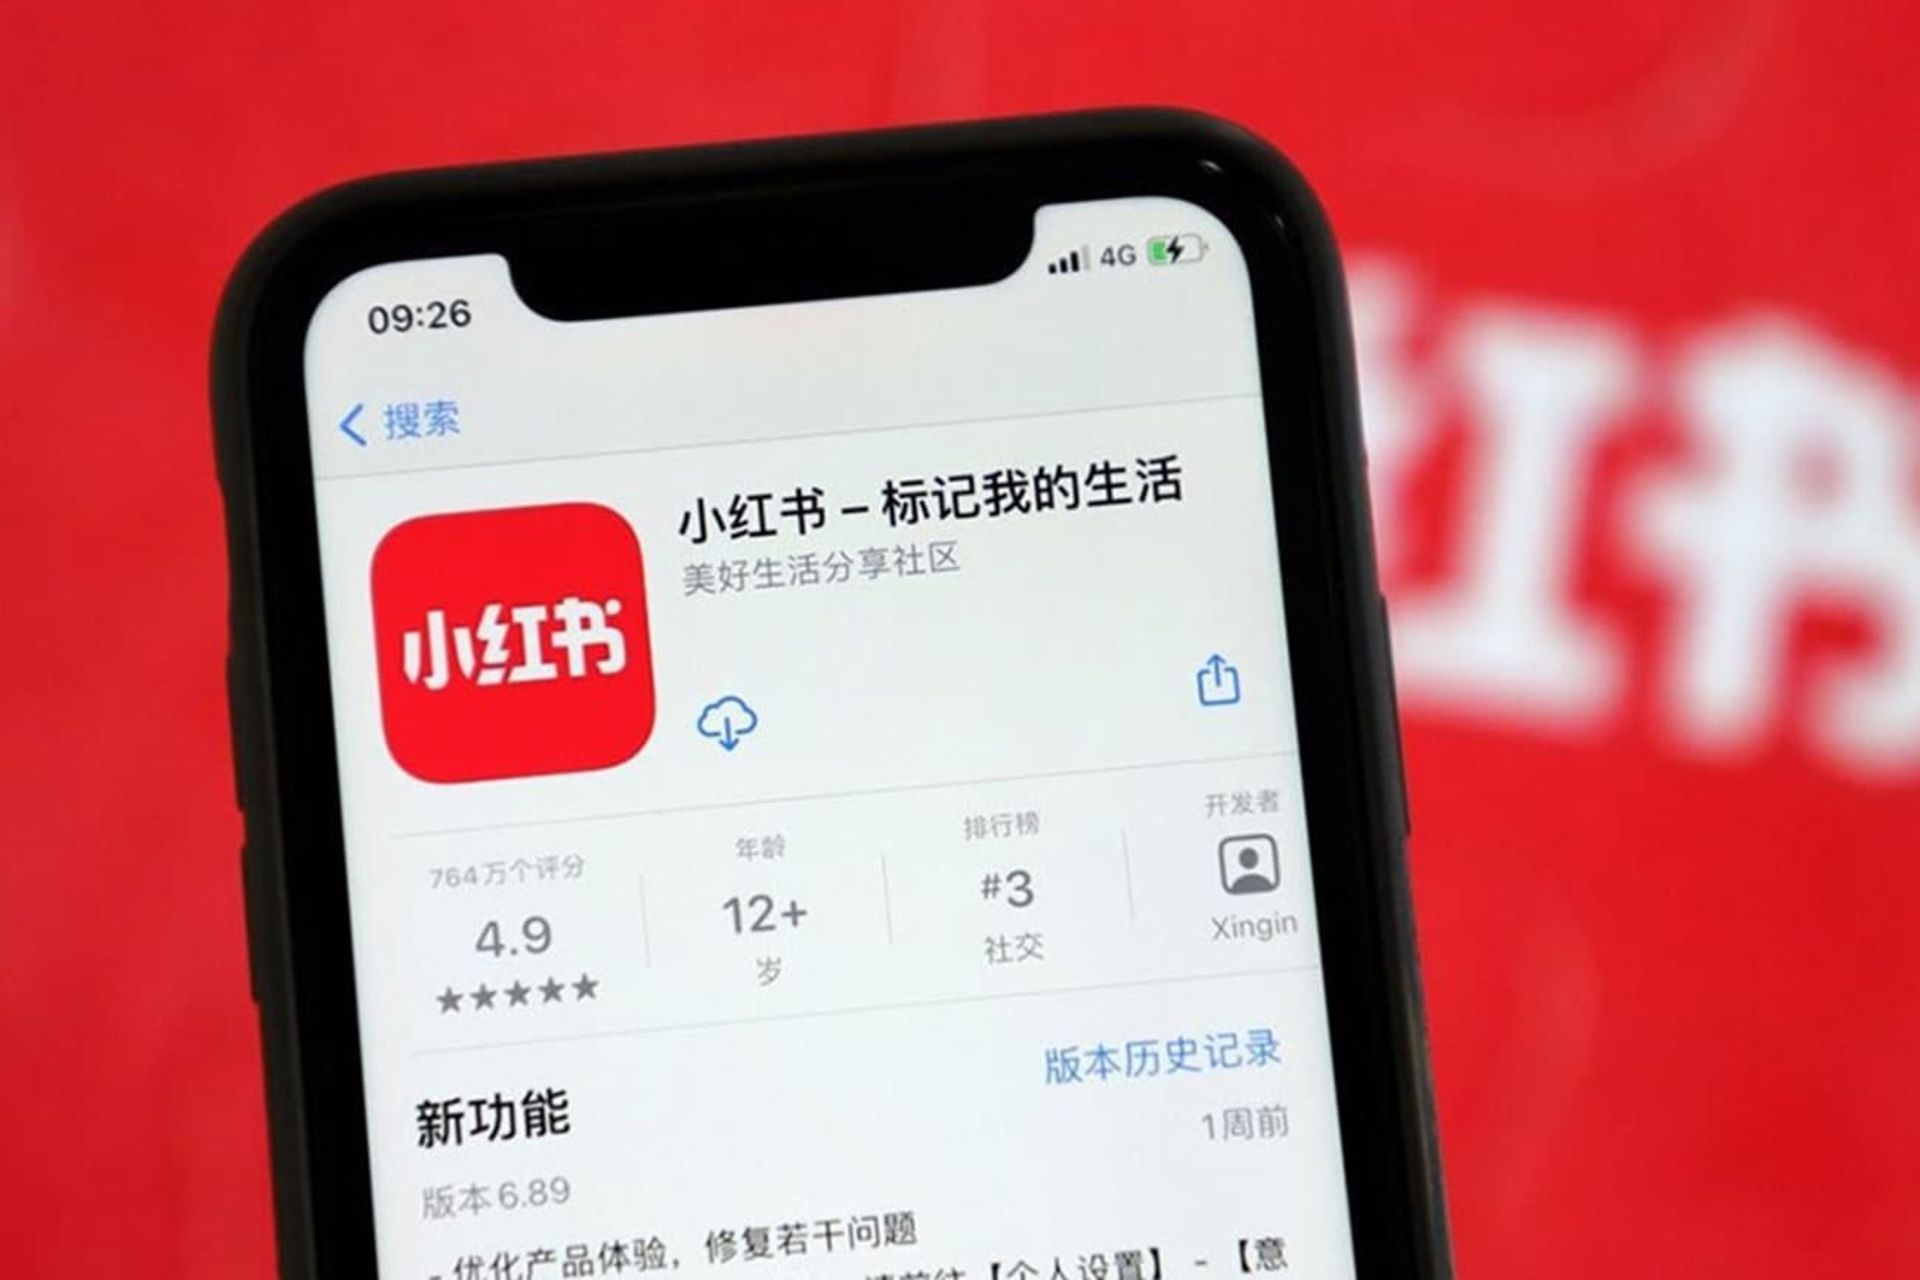 صفحه دانلود اپلیکیشن Xiaohongshu در یک اپ مارکت چینی